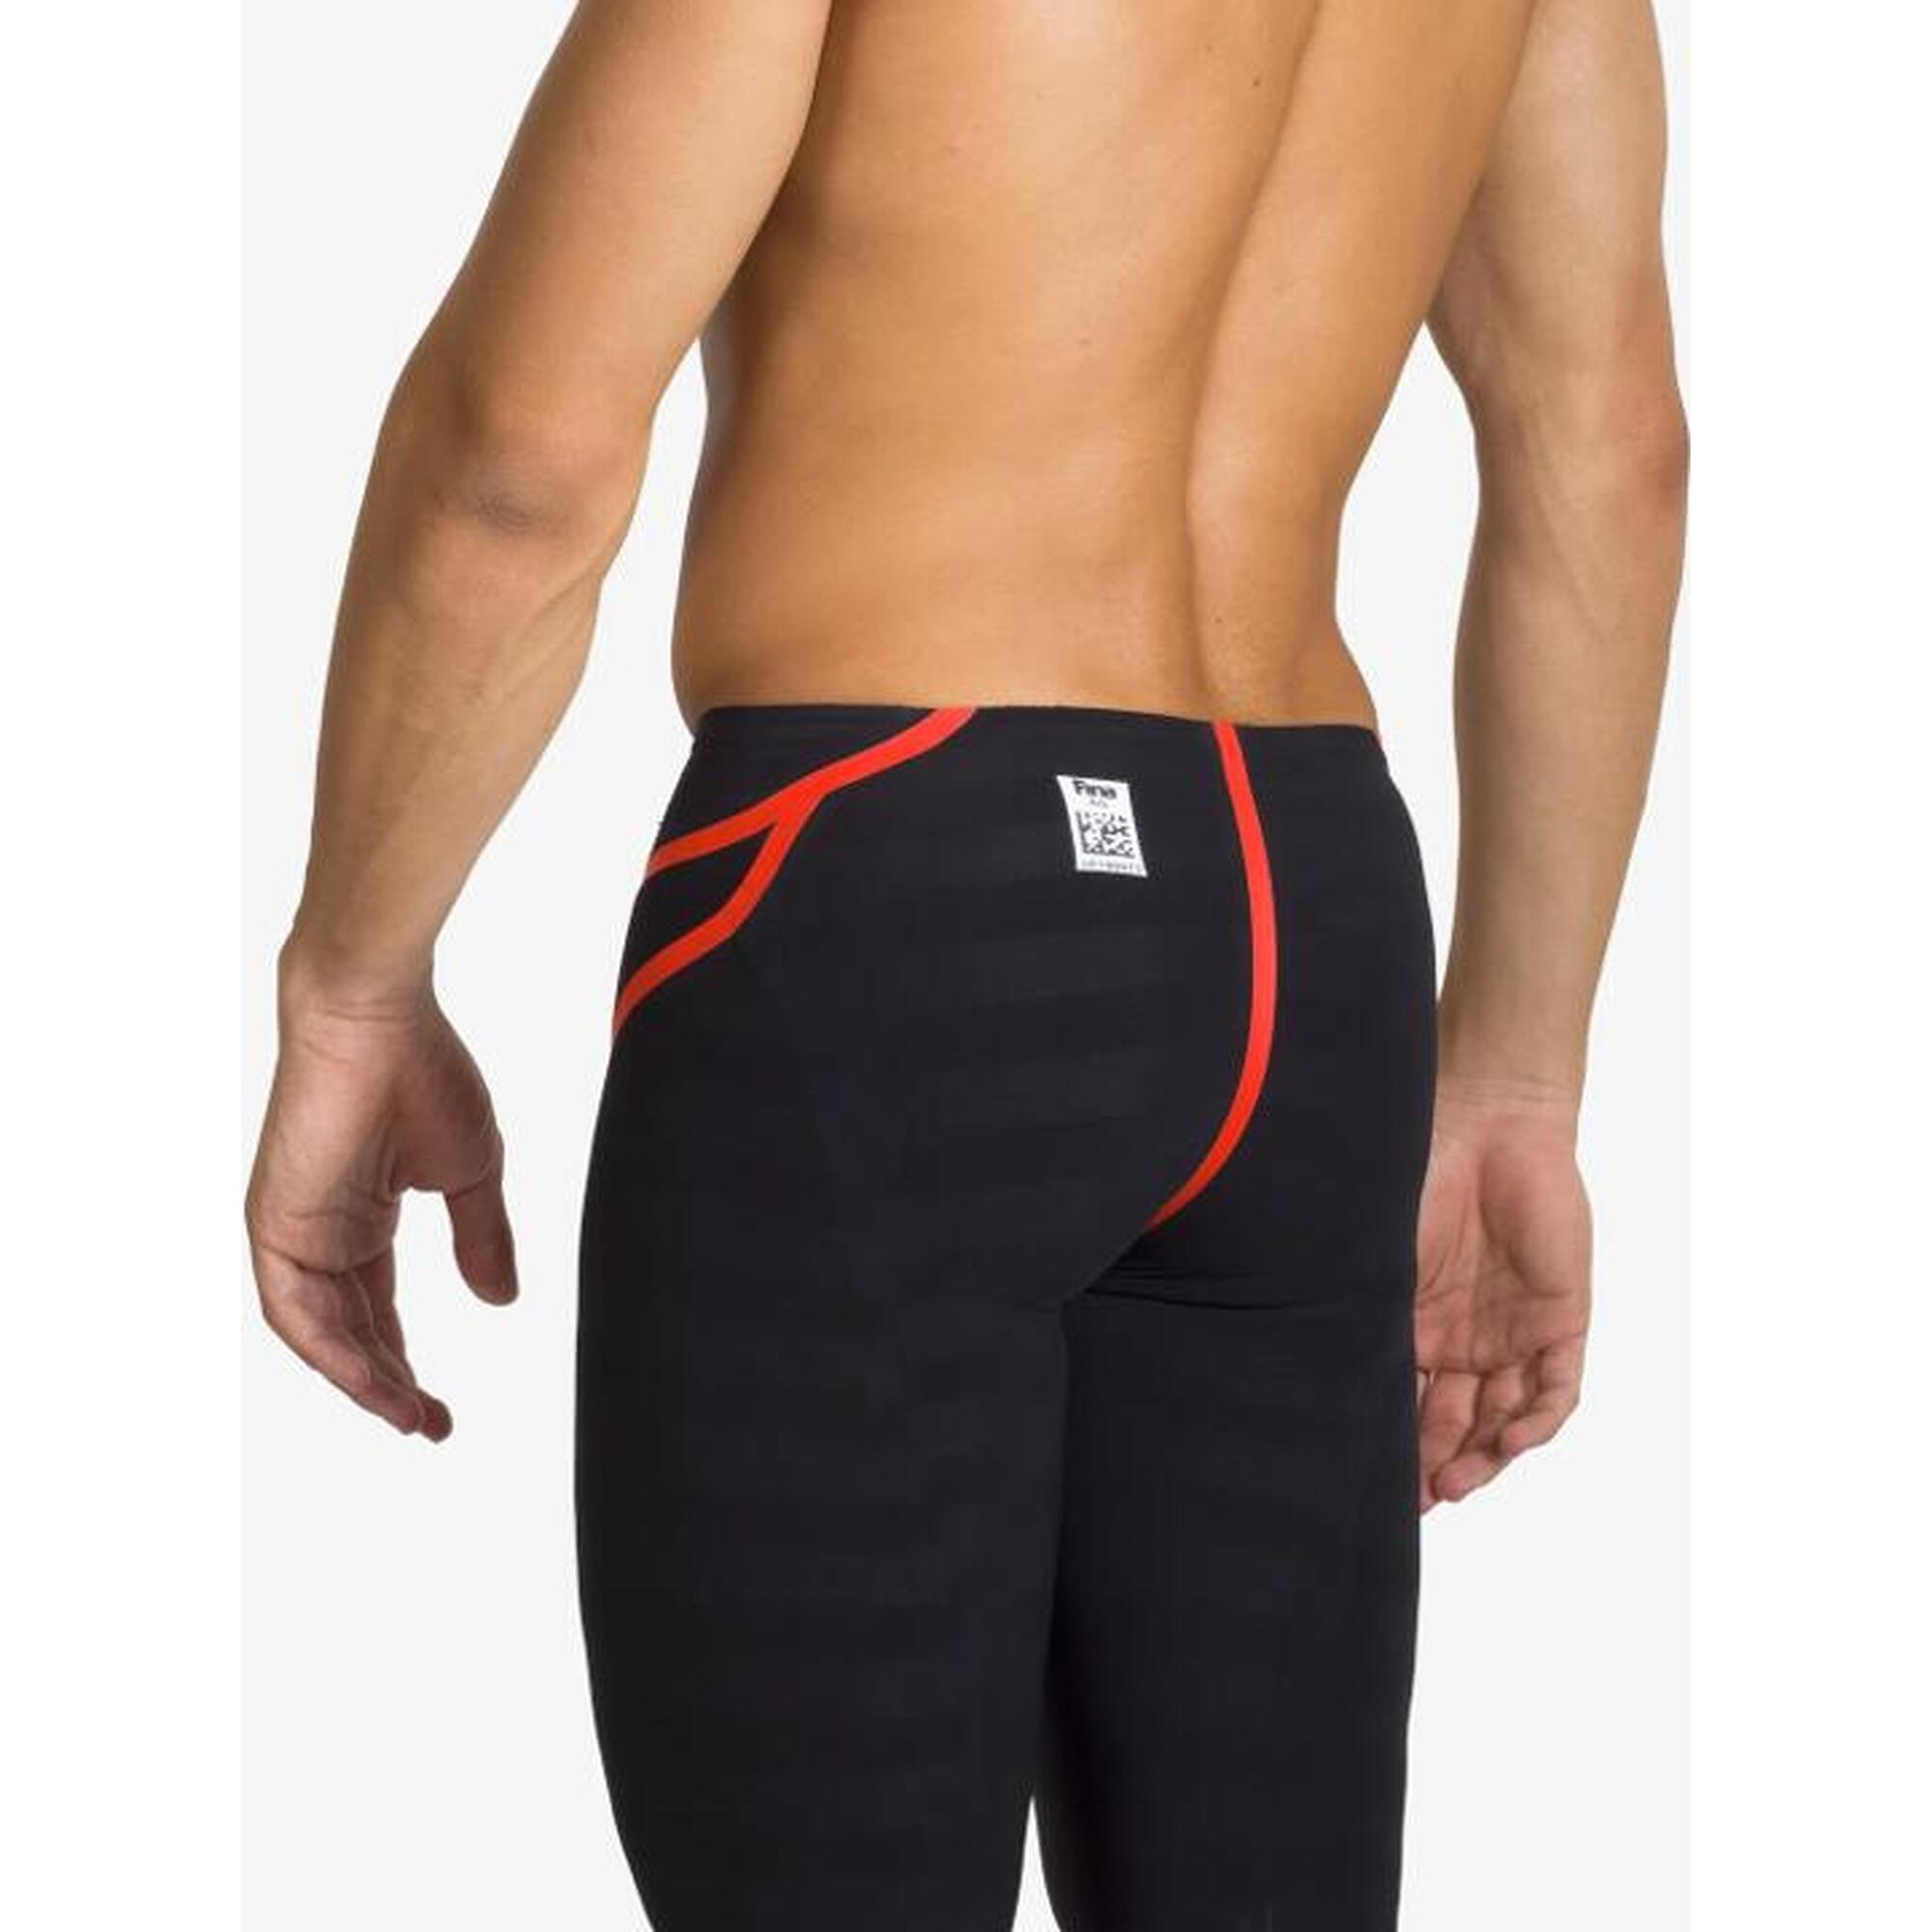 JKOMP FINA 認可男士競賽泳褲 - 黑色, 橙色